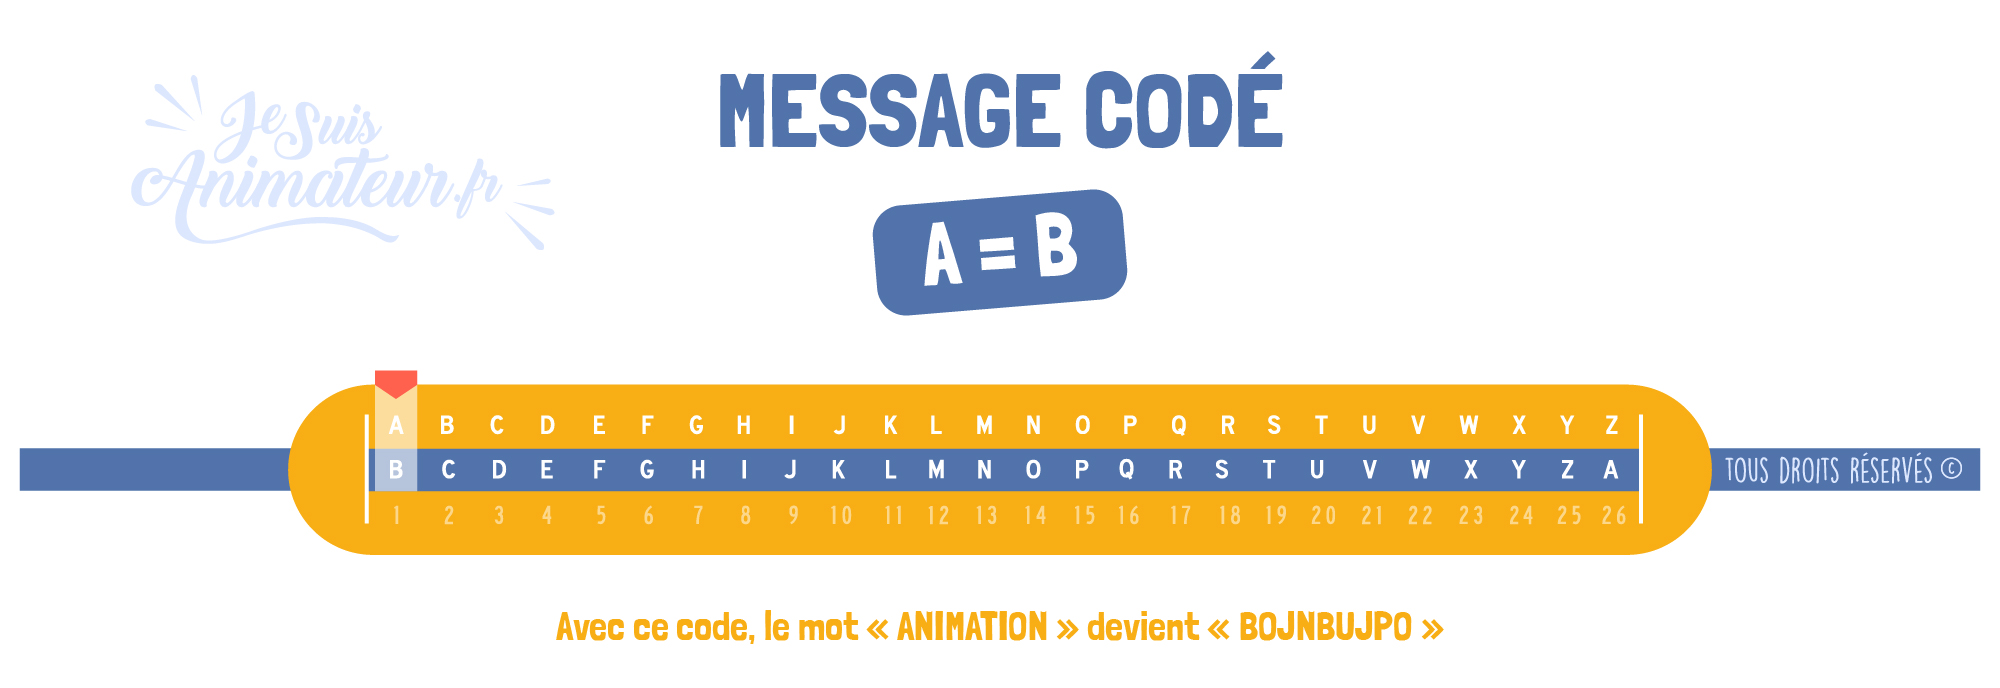 Message codé « Alphabet décalé » (A = B)